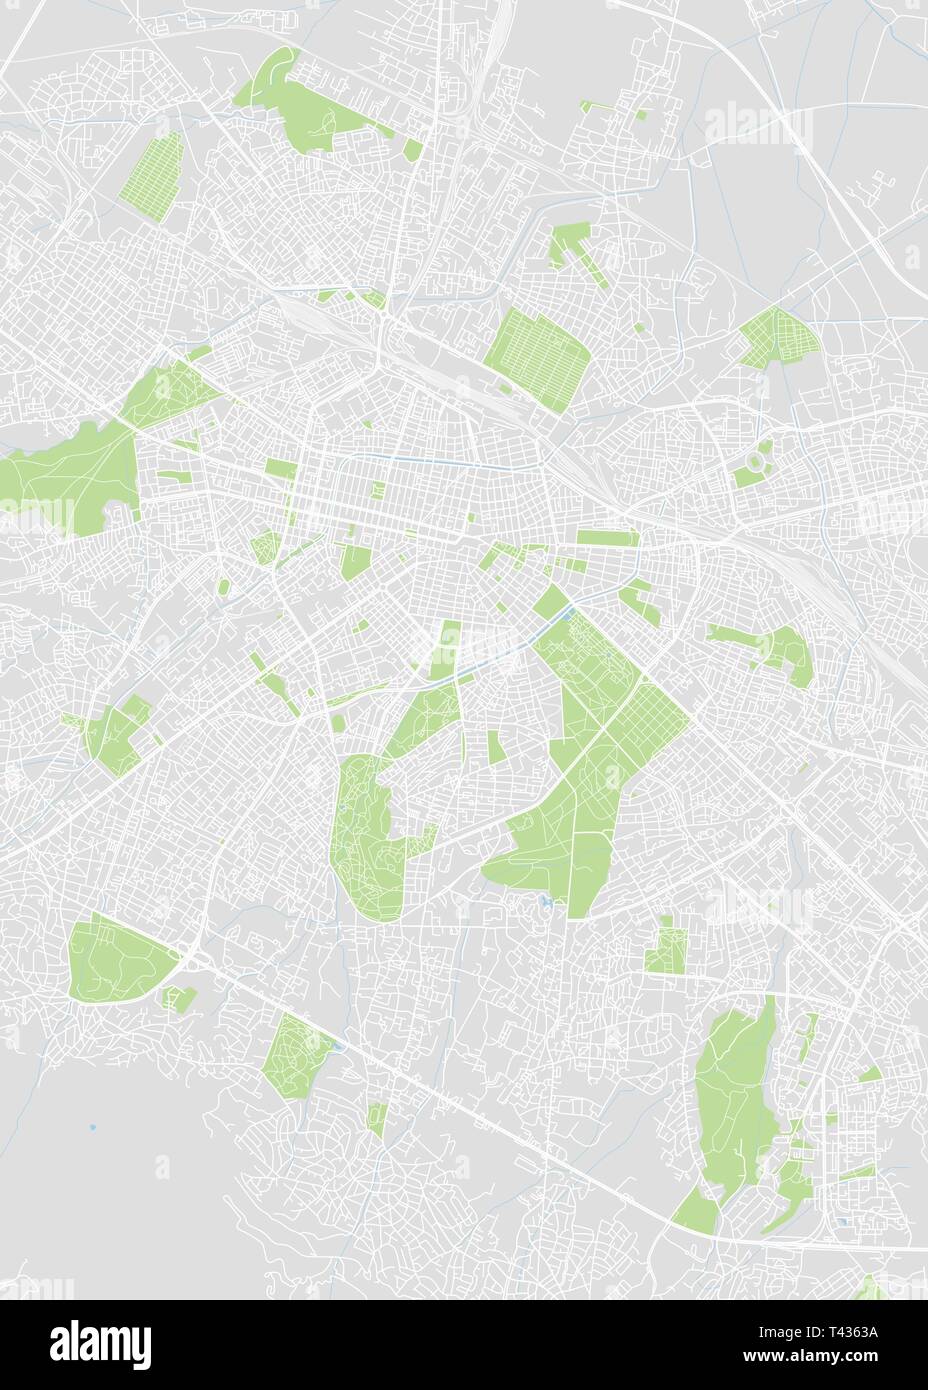 Sofia City plan, dettagliata mappa vettoriale piano particolareggiato della città, fiumi e strade Illustrazione Vettoriale